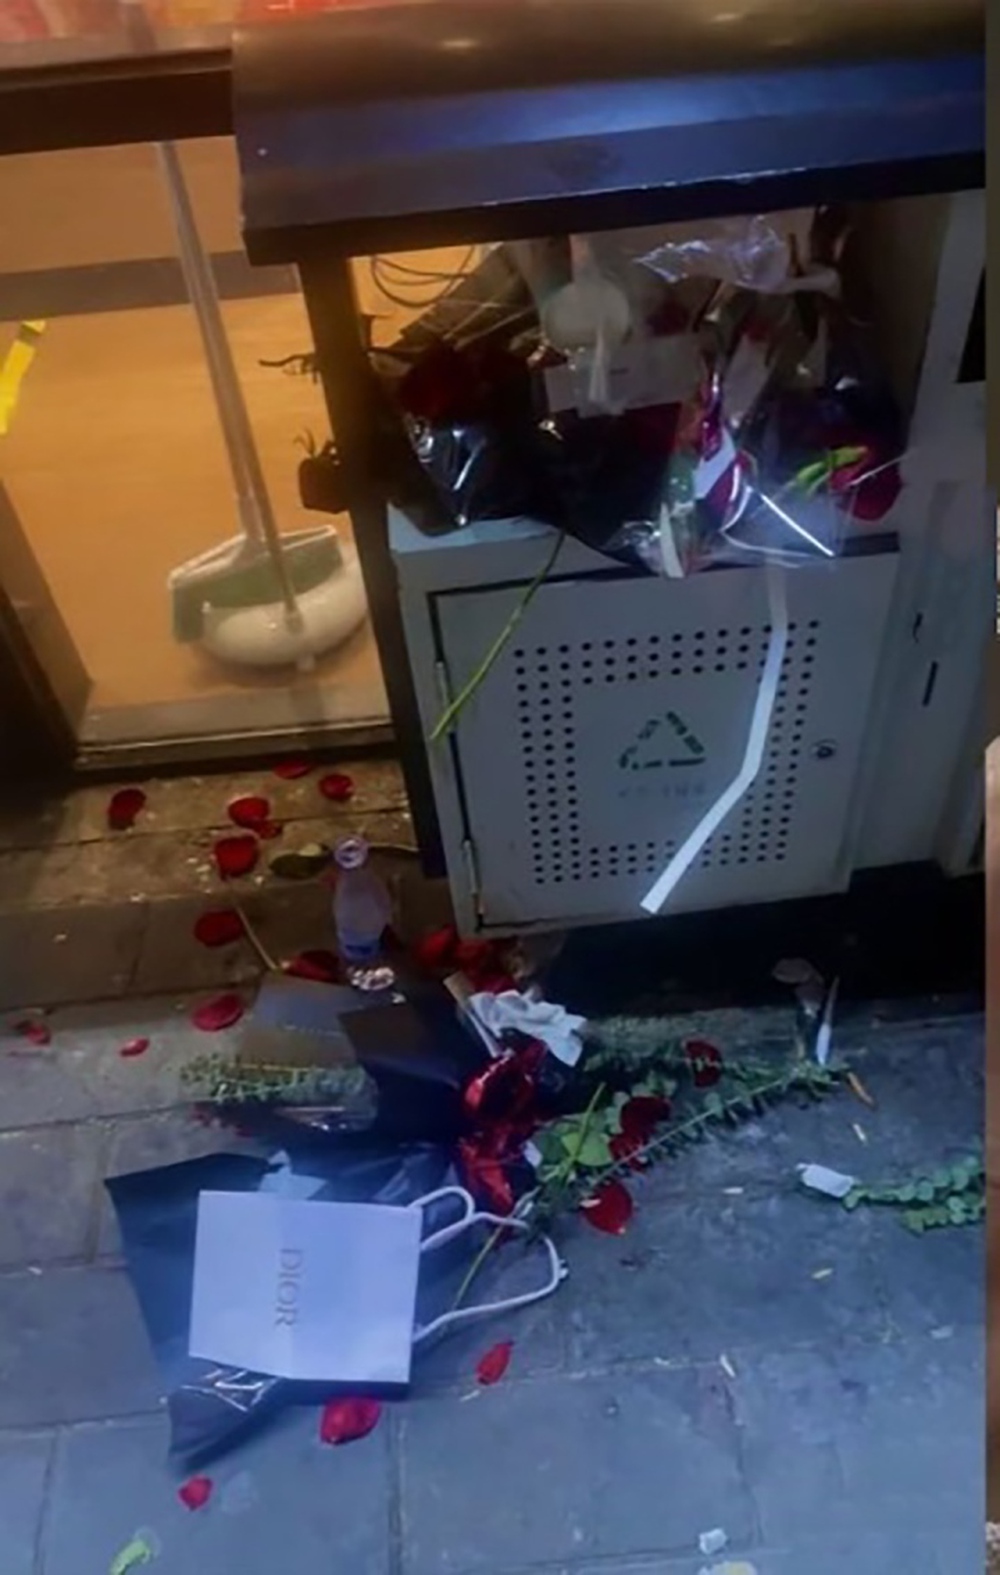 Nhặt hoa ở thùng rác sau ngày Valentine, cô gái nhận được điều bất ngờ - Ảnh 3.